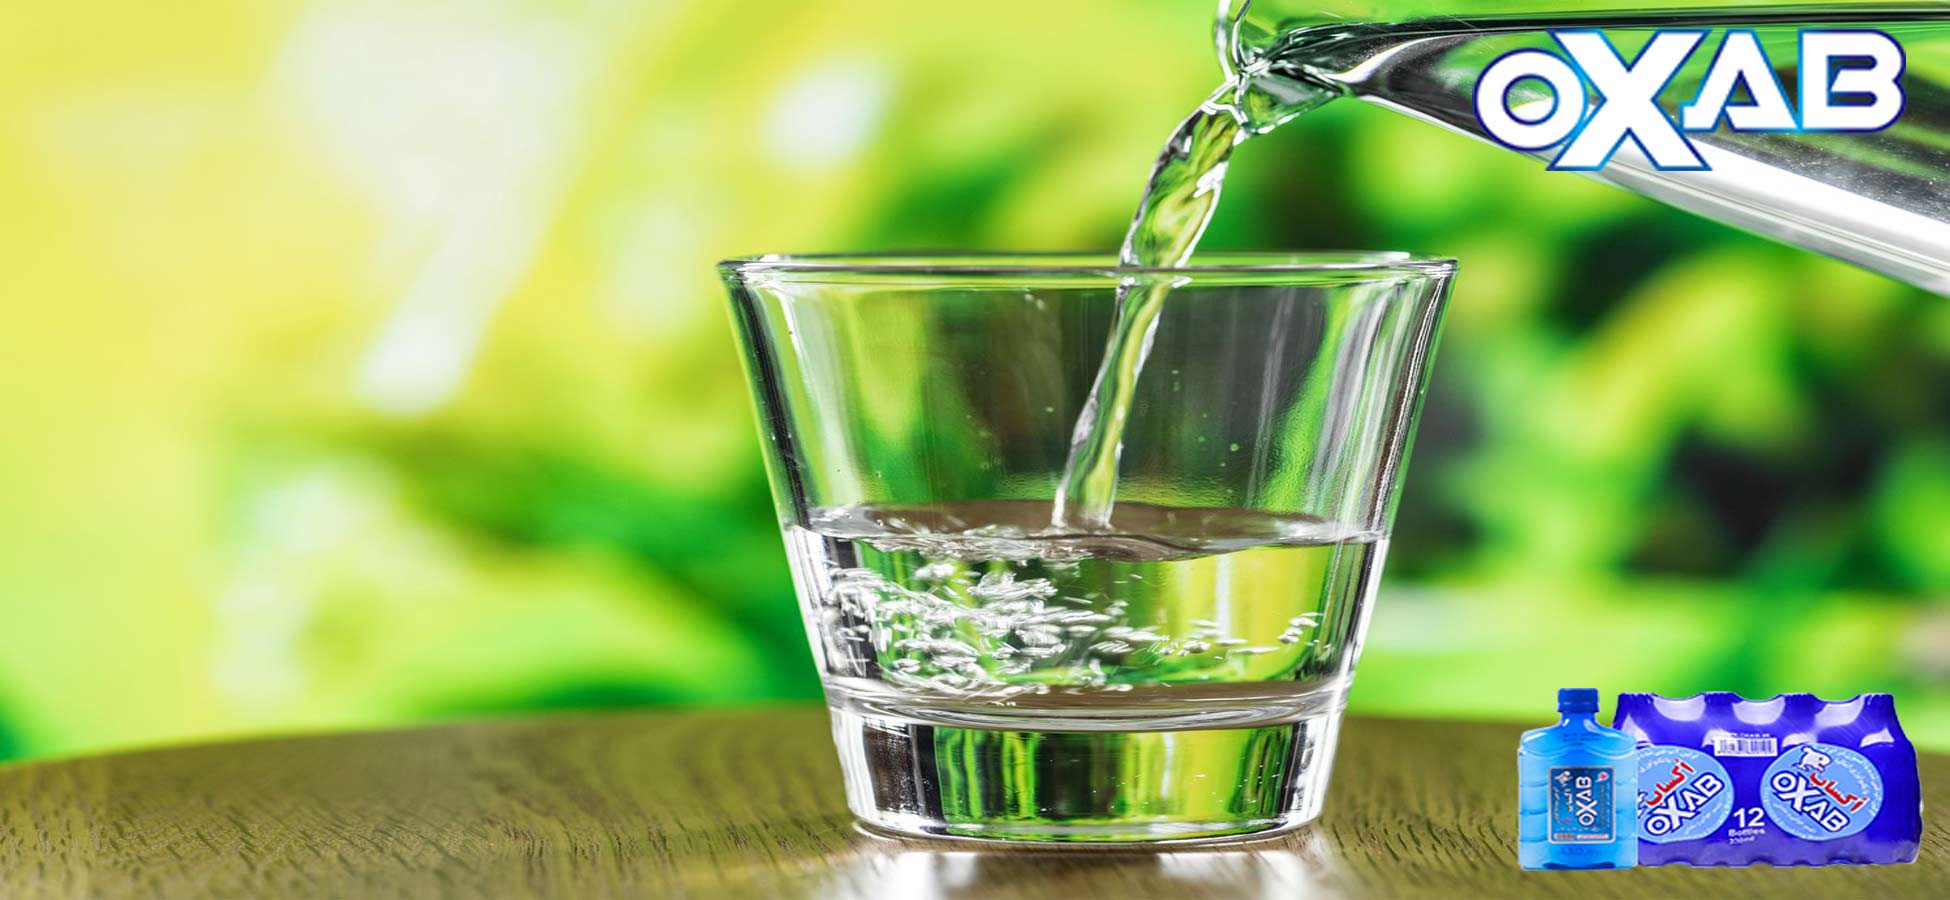 وقتی شروع به نوشیدن آب می کنید چه اتفاقی در بدن می افتد؟